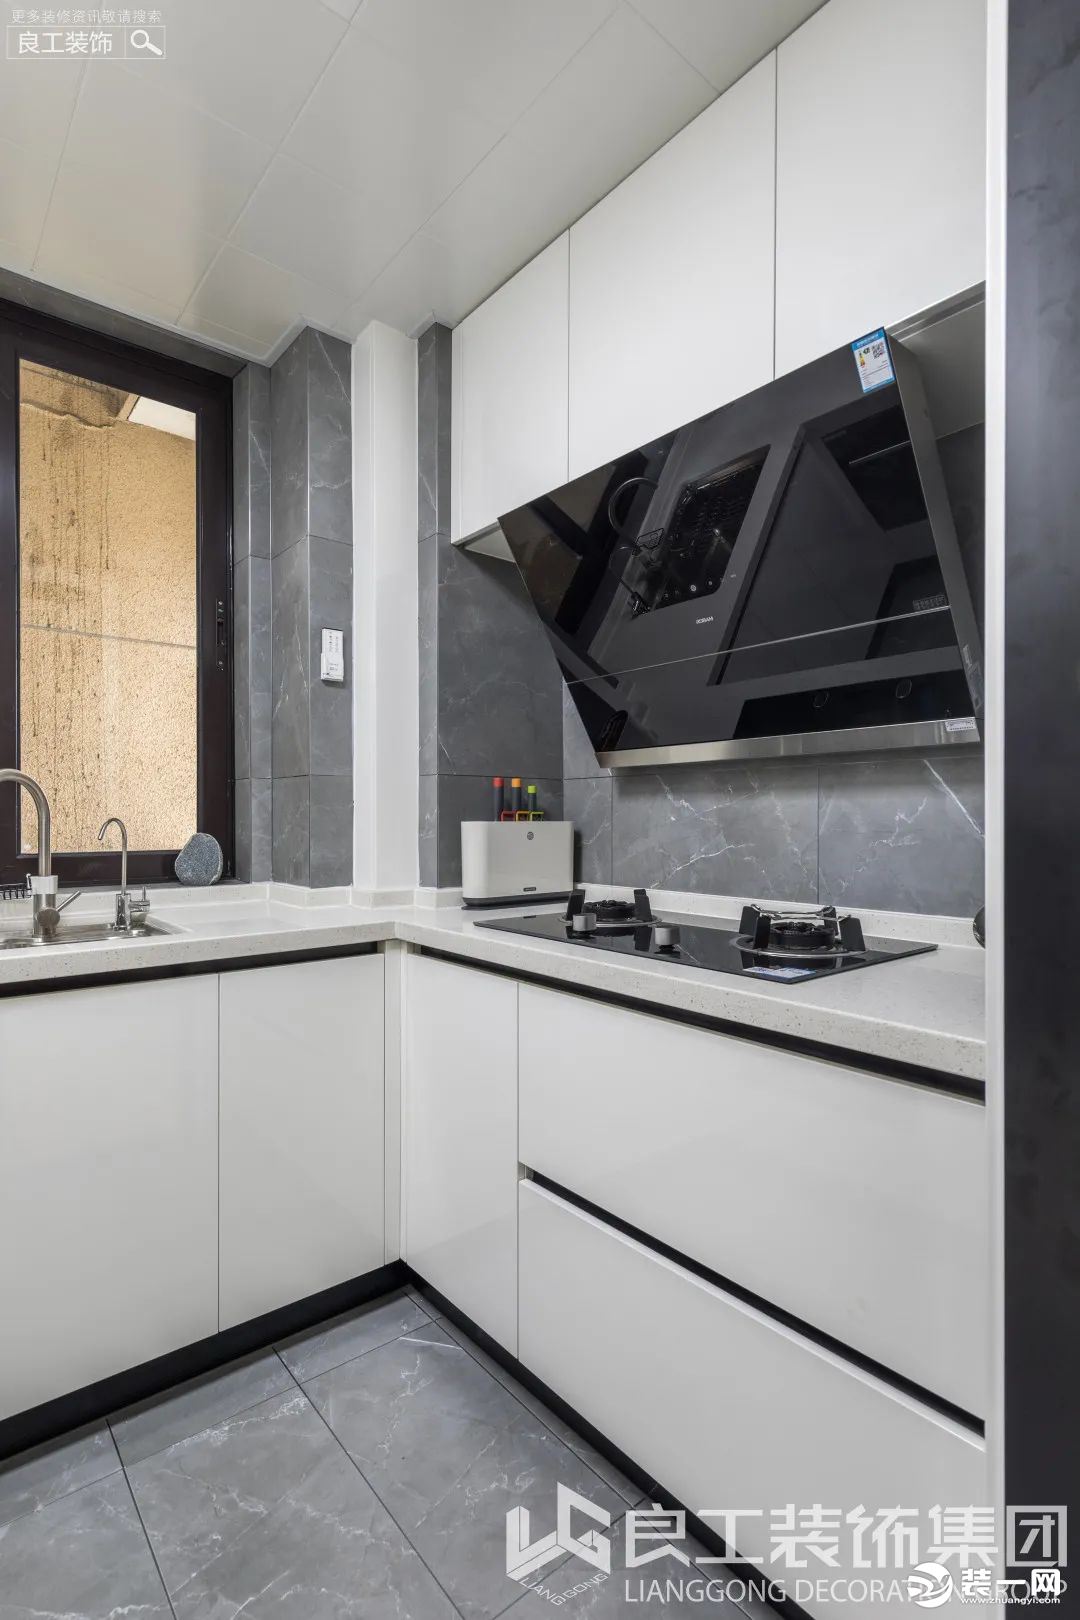 厨房空间打造成了黑白色调，白色的烤漆柜体与磨砂质感的台面完美契合，搭配深灰色花纹墙砖，时尚大气